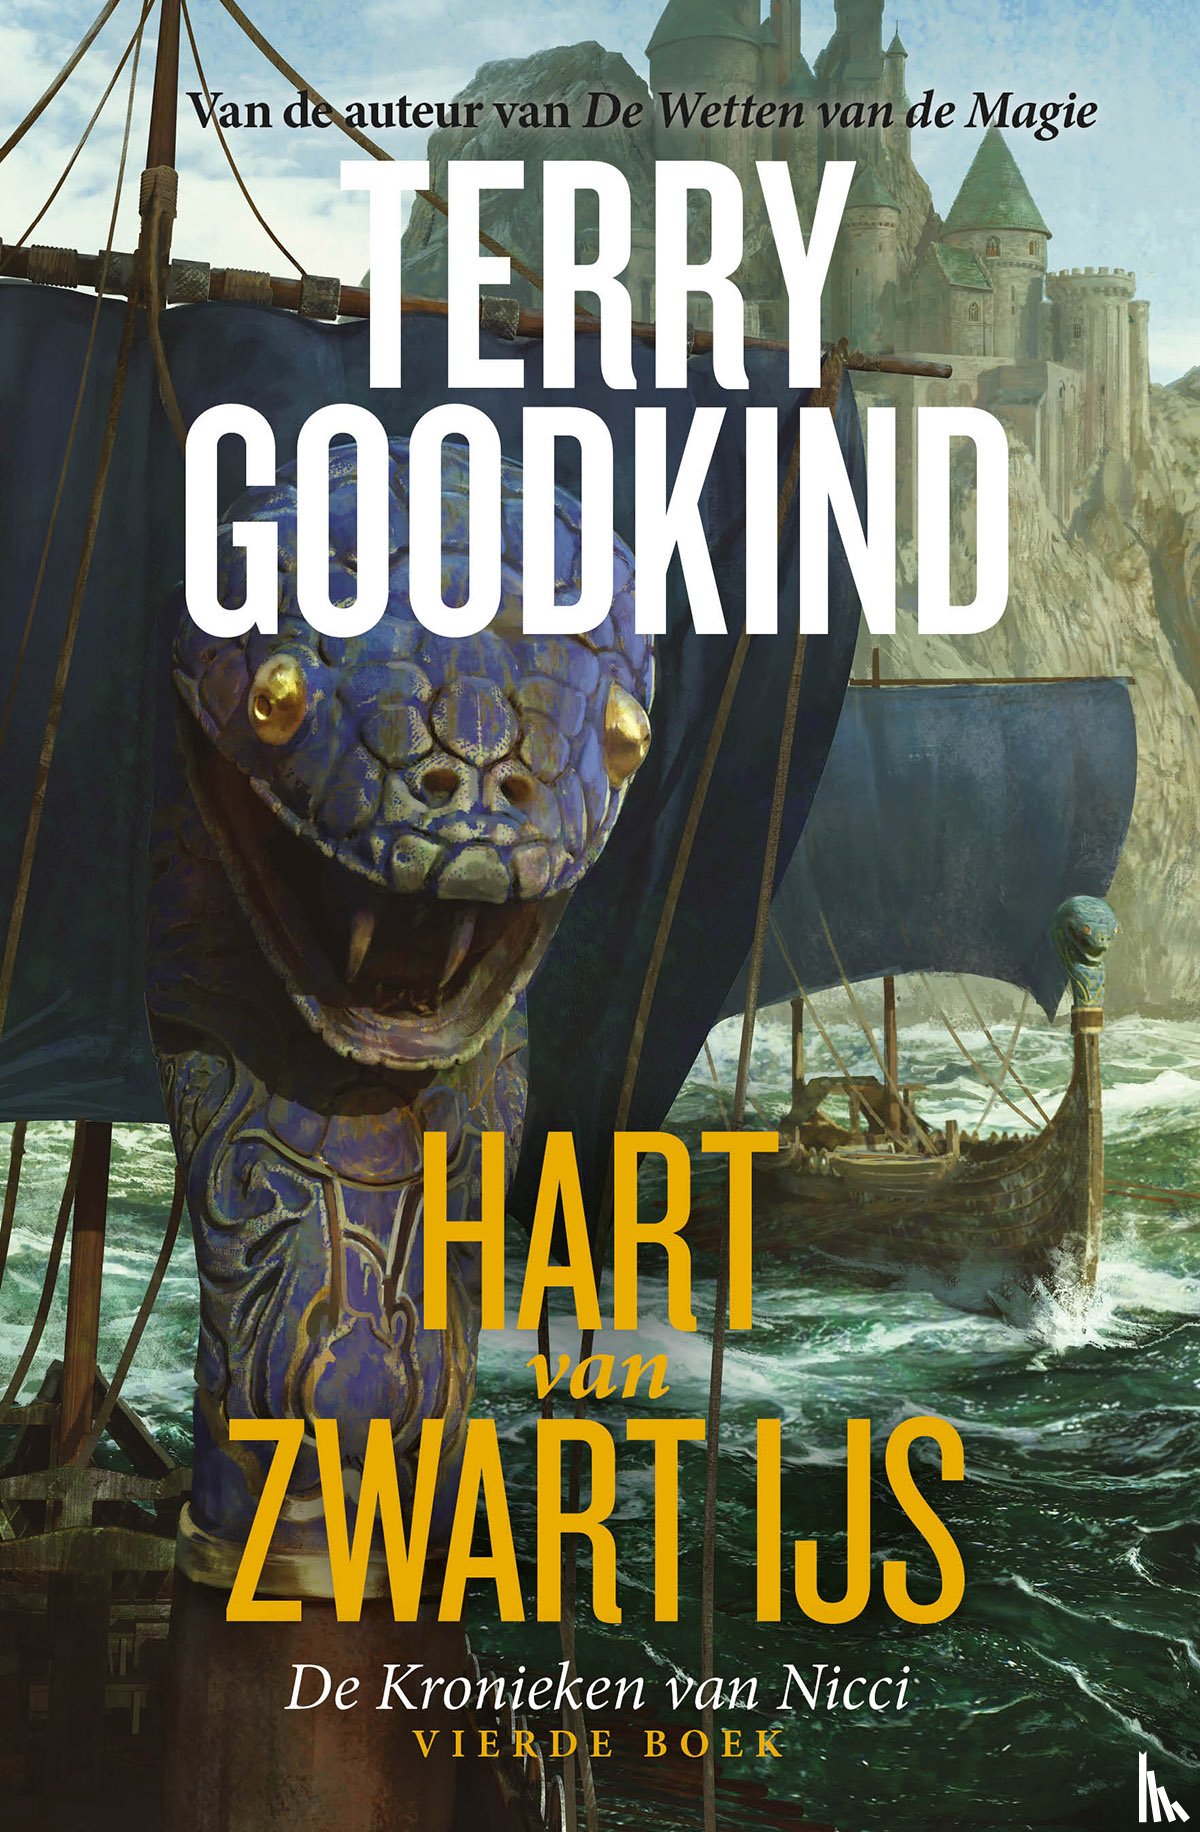 Goodkind, Terry - Hart van Zwart IJs